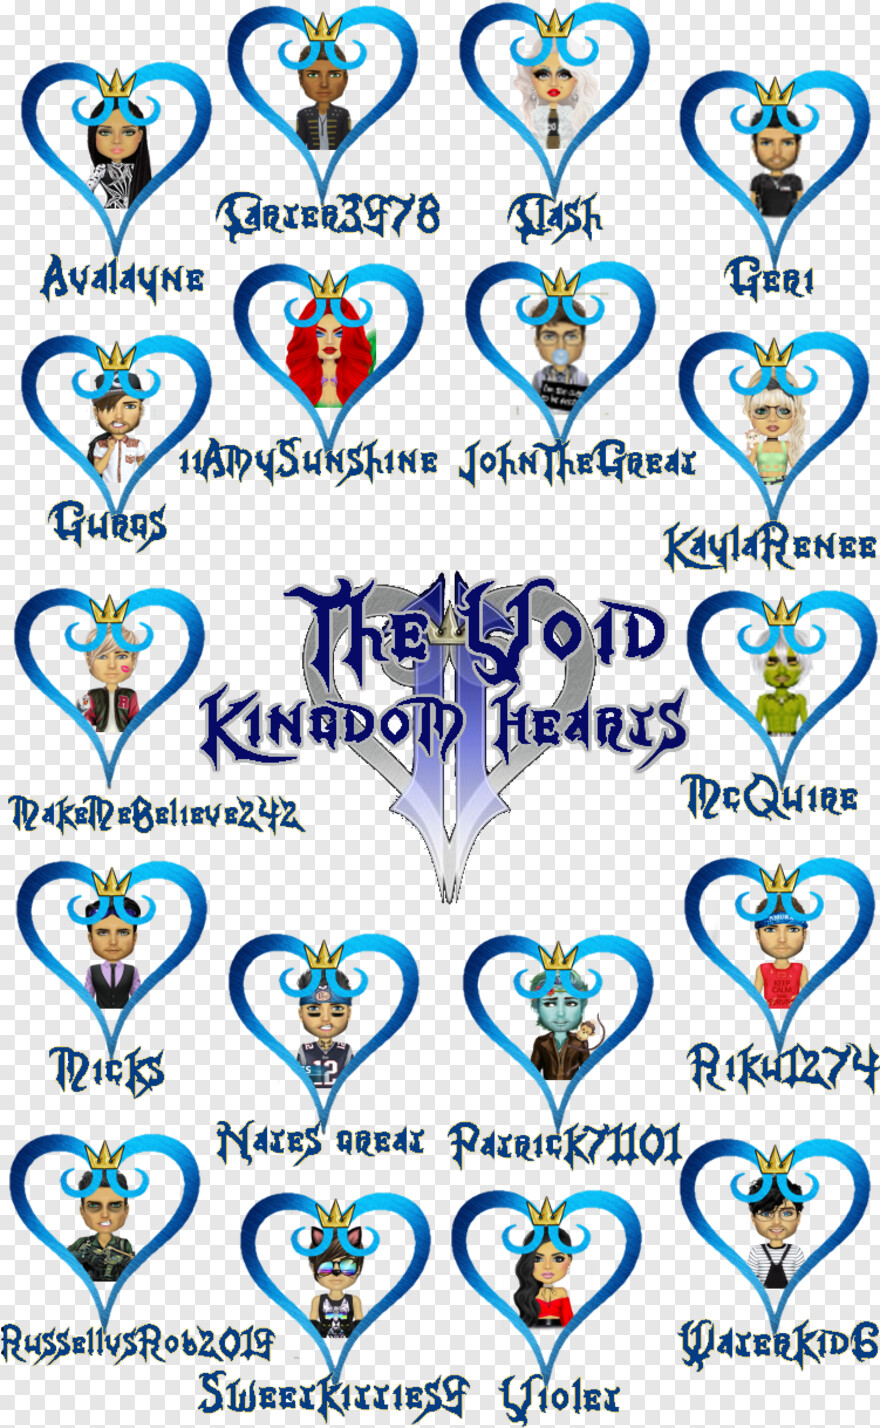 kingdom-hearts-logo # 430618